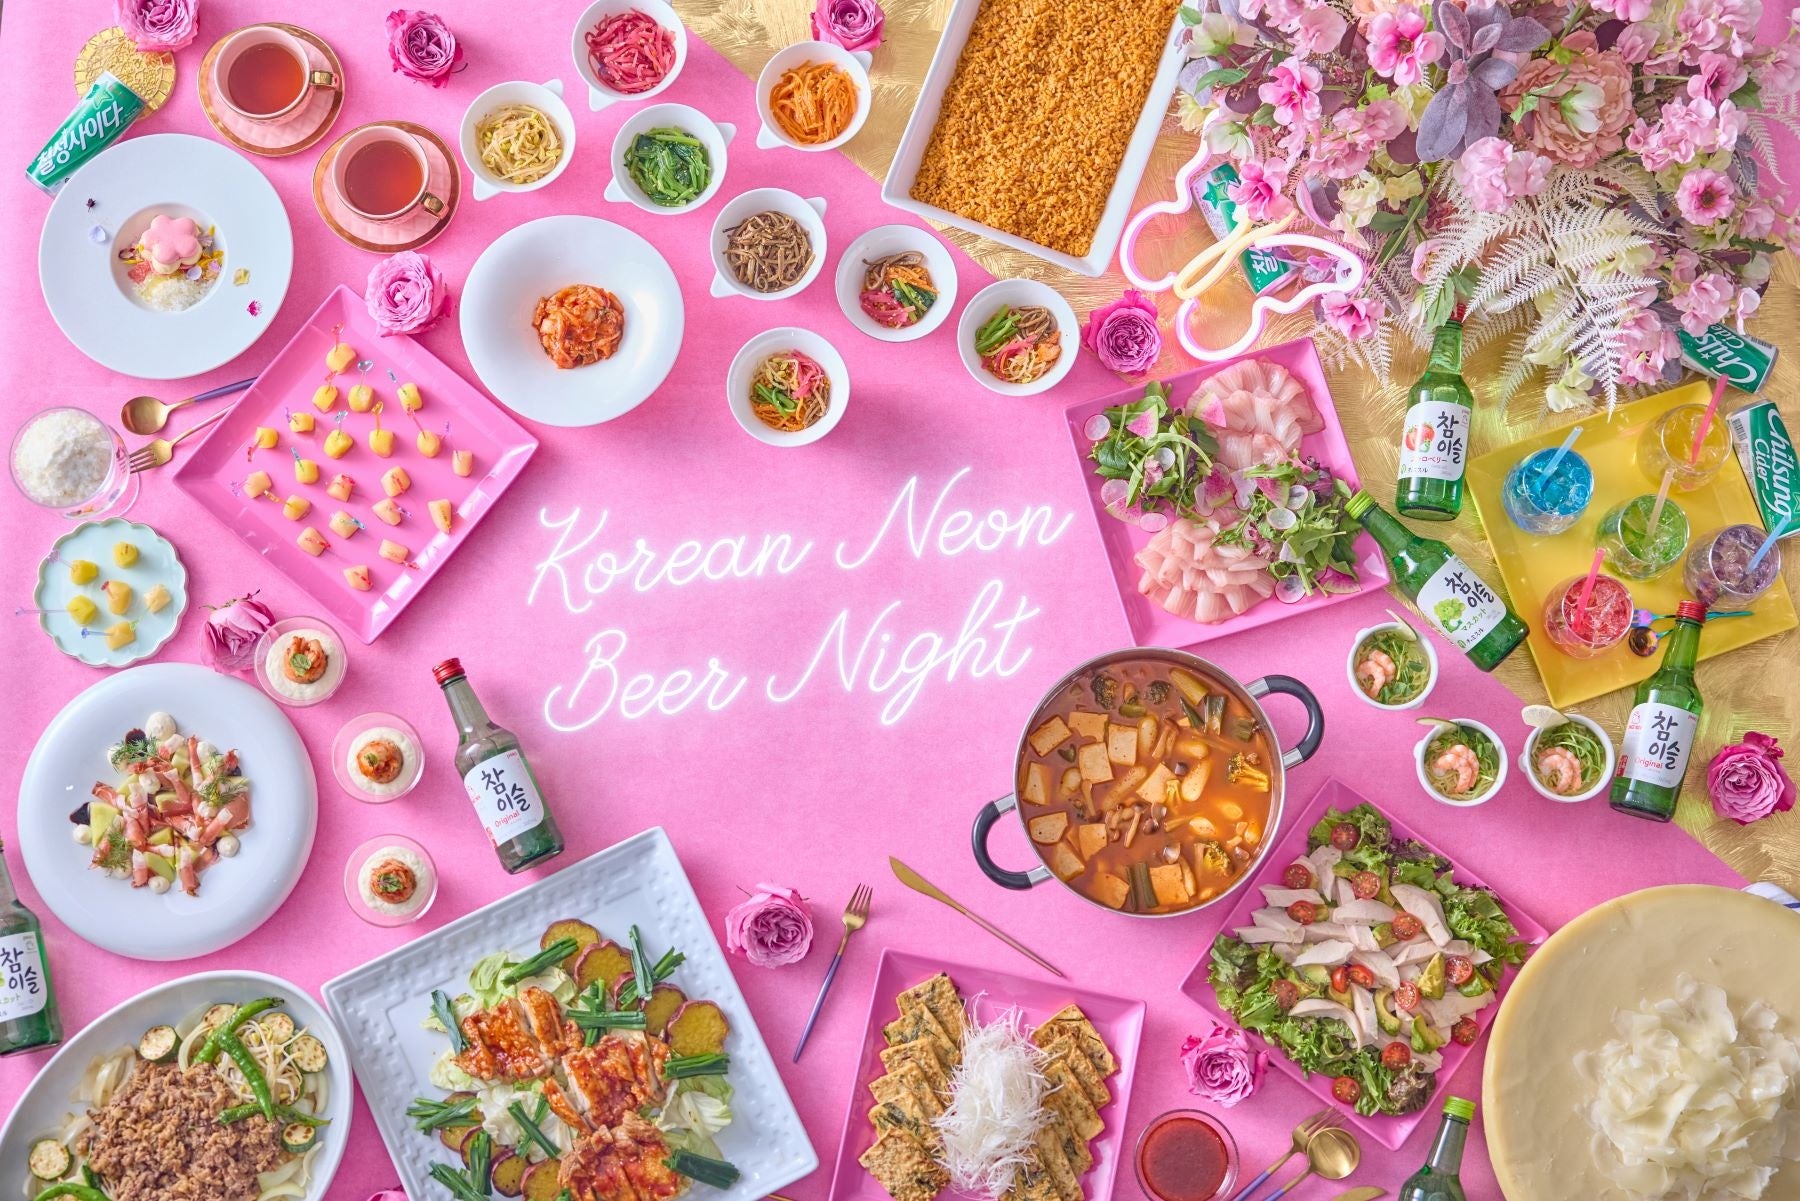 好評につき9月の追加開催決定！プール付きのガーデンや、シャンデリアが煌びやかな会場で楽しむ韓国ビアガーデン『Korean Neon Beer Night』